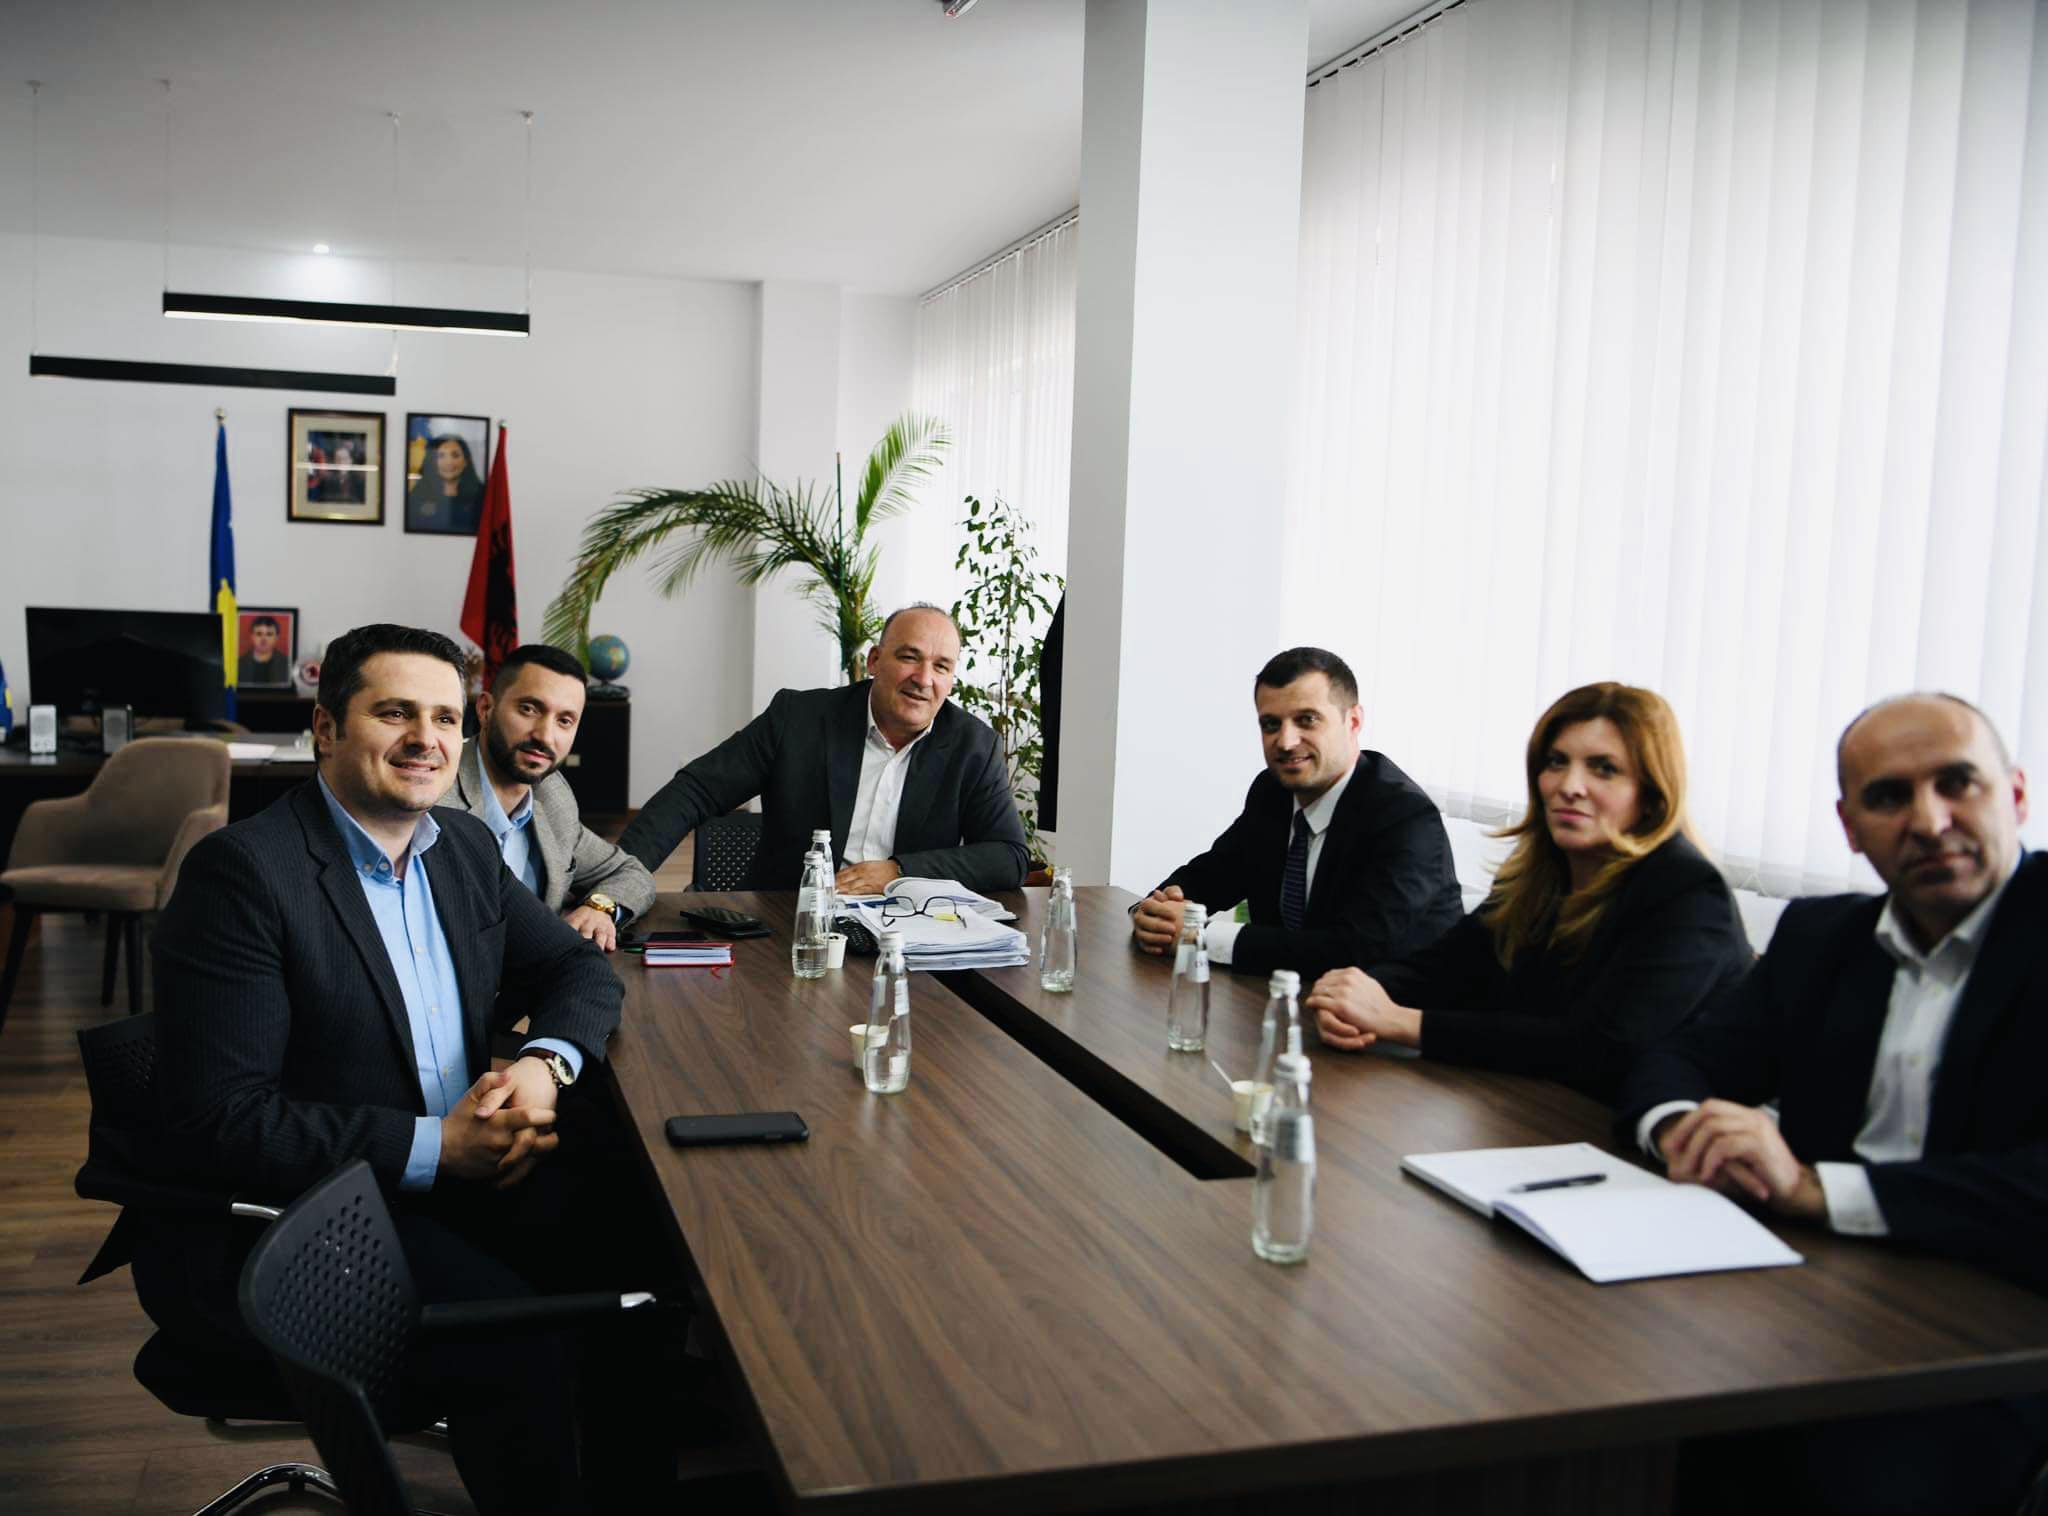  Anëtarët e Këshillit të Pavarur Mbikëqyrës për Shërbimin Civil të Kosovës i shkojnë në zyrë Bulliqit